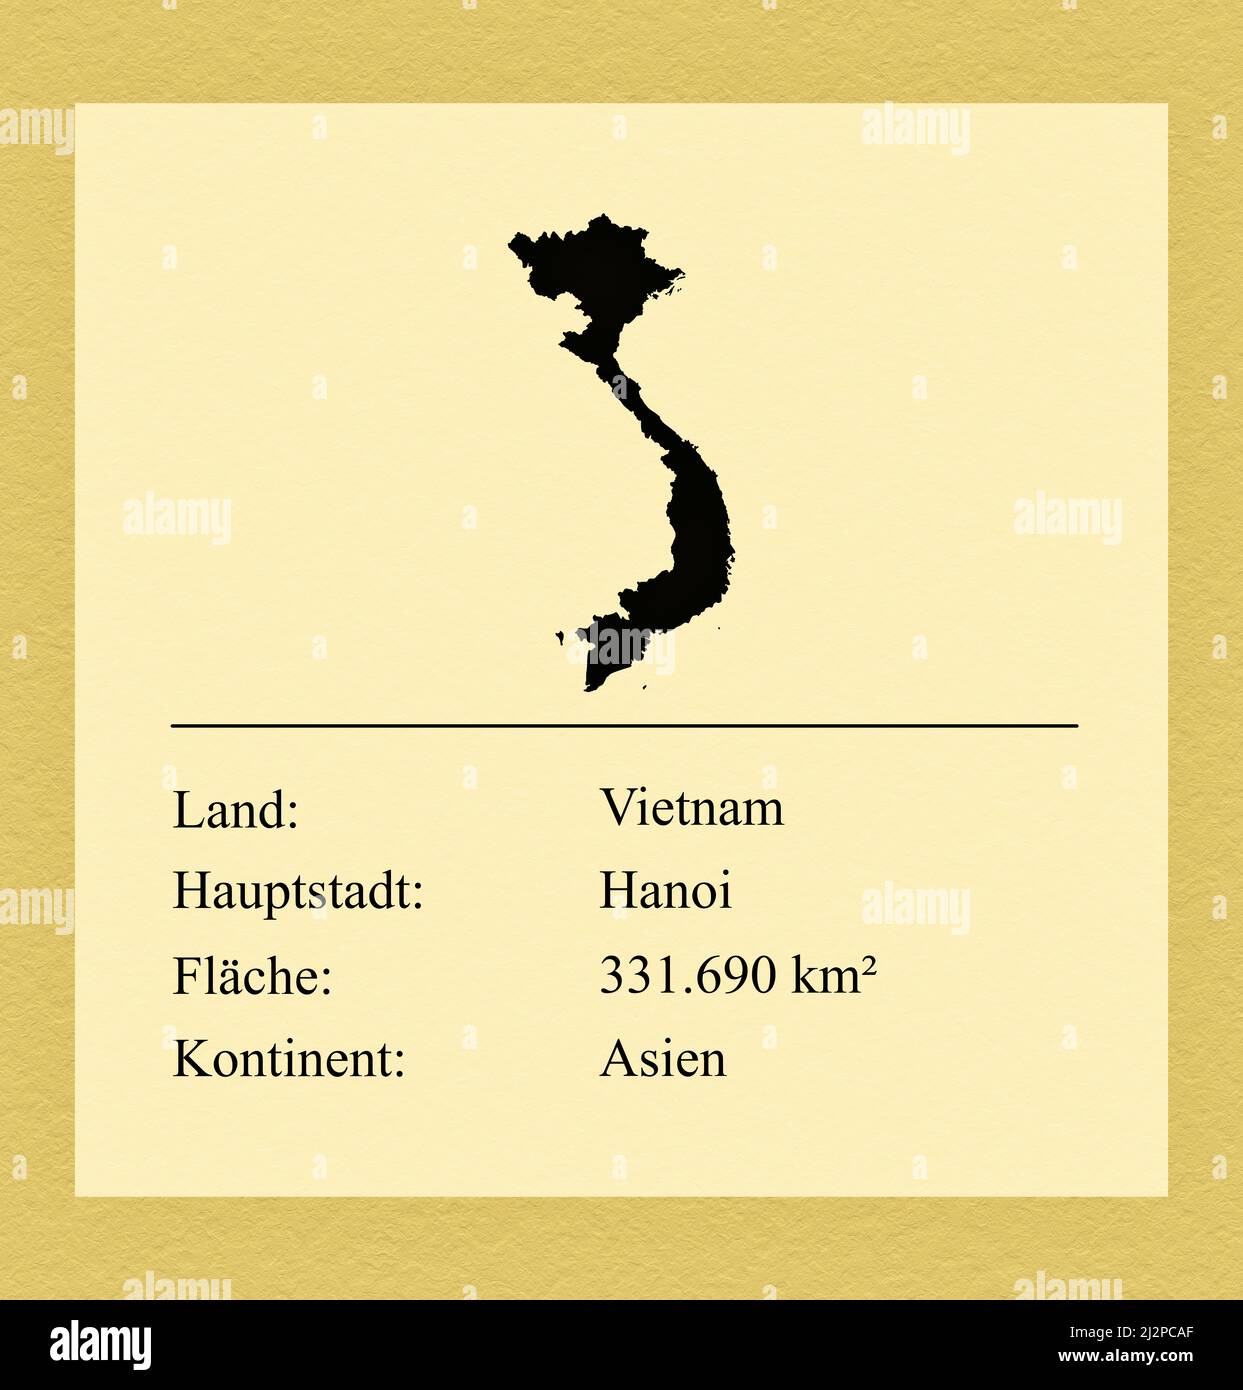 Umrisse des Landes Vietnam, darunter ein kleiner Steckbrief mit Ländernamen, Hauptstadt, Fläche und Kontinent Foto de stock